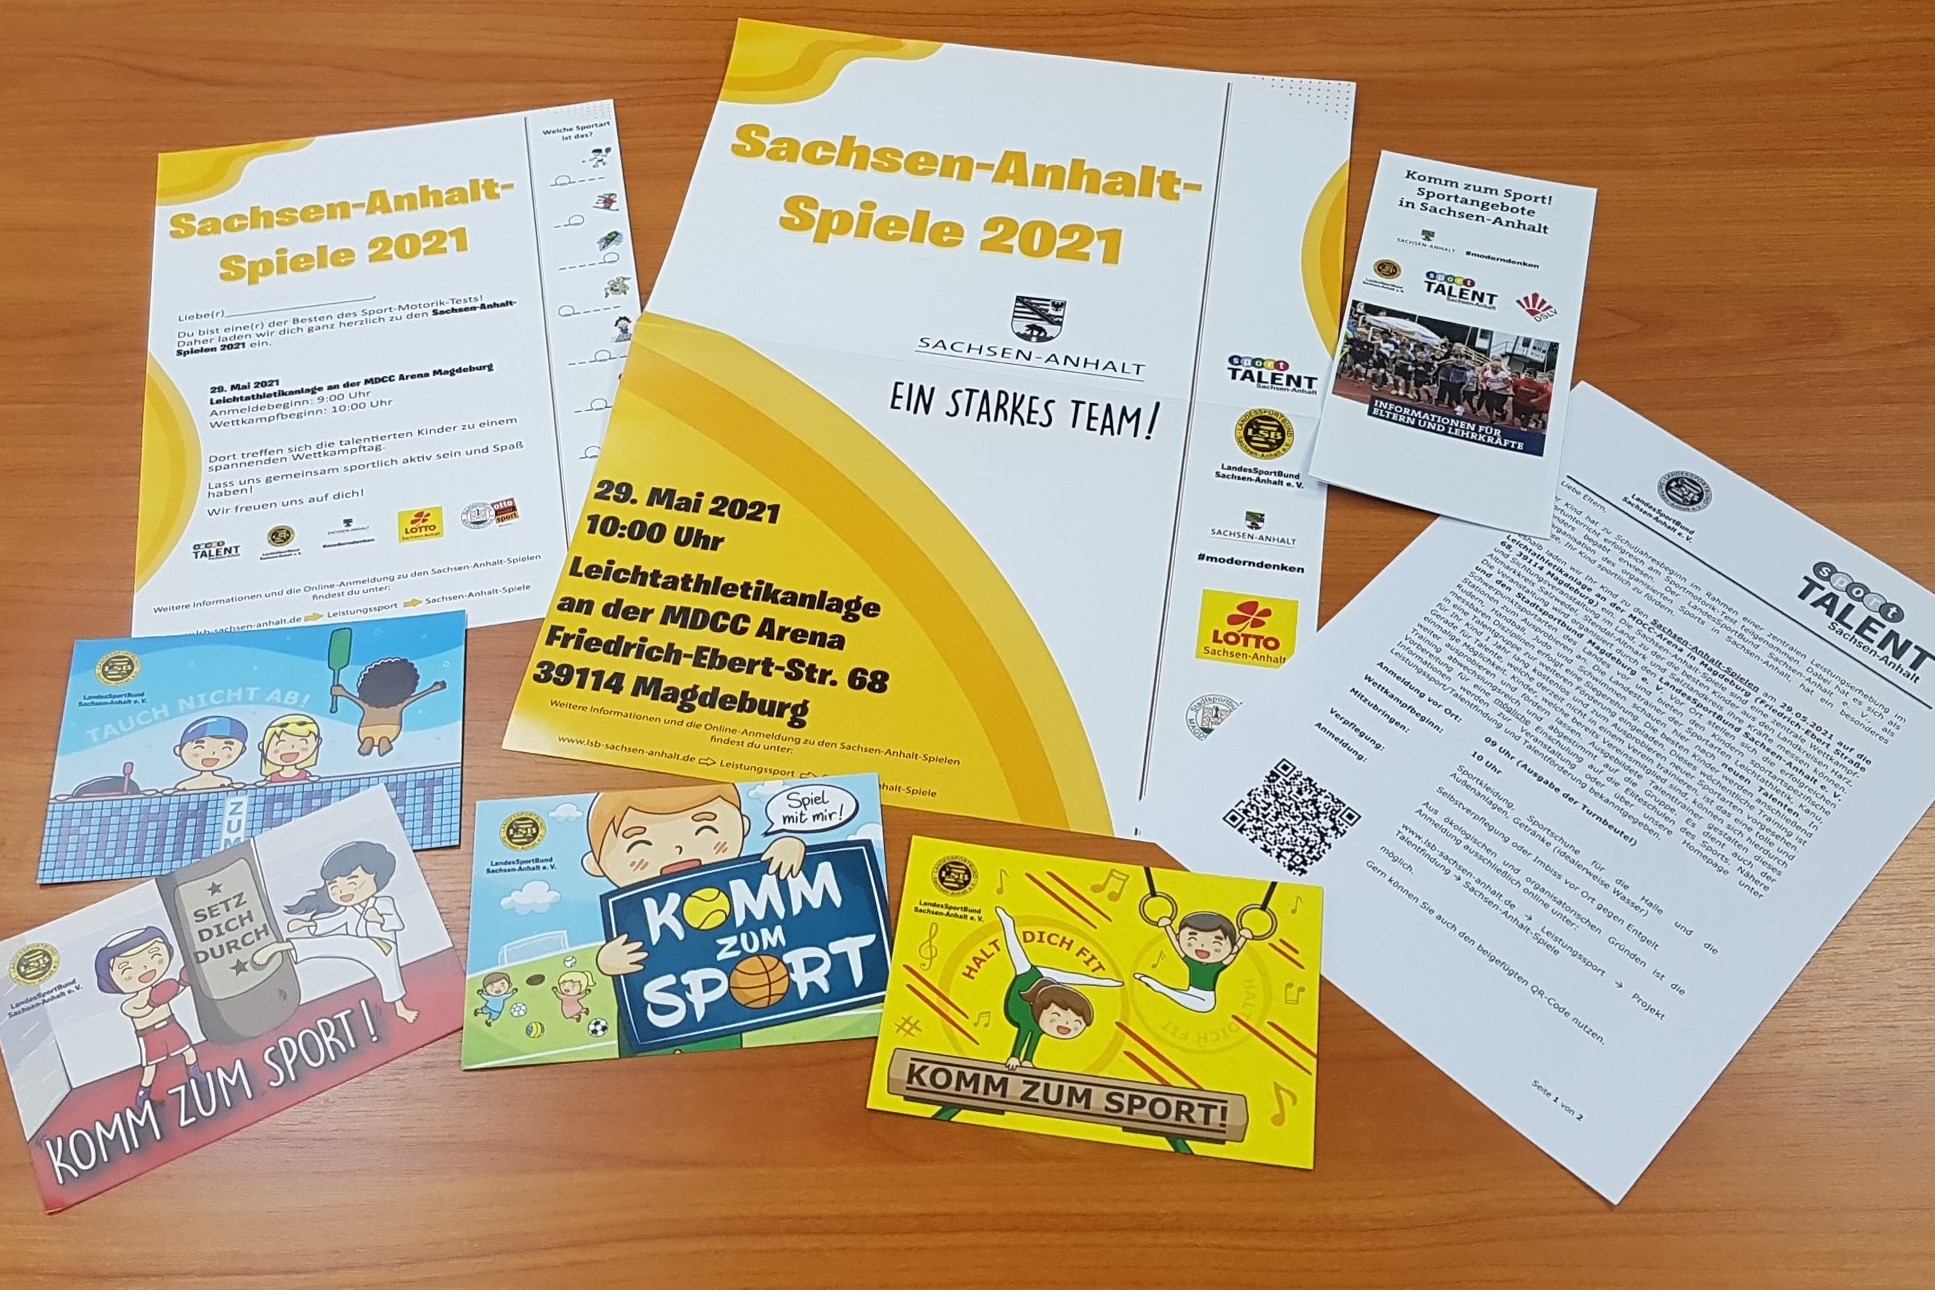 Die Einladungspaket für die Sachsen-Anhalt-Spiele 2021 in Halle und Magdeburg sind bereits übergeben.